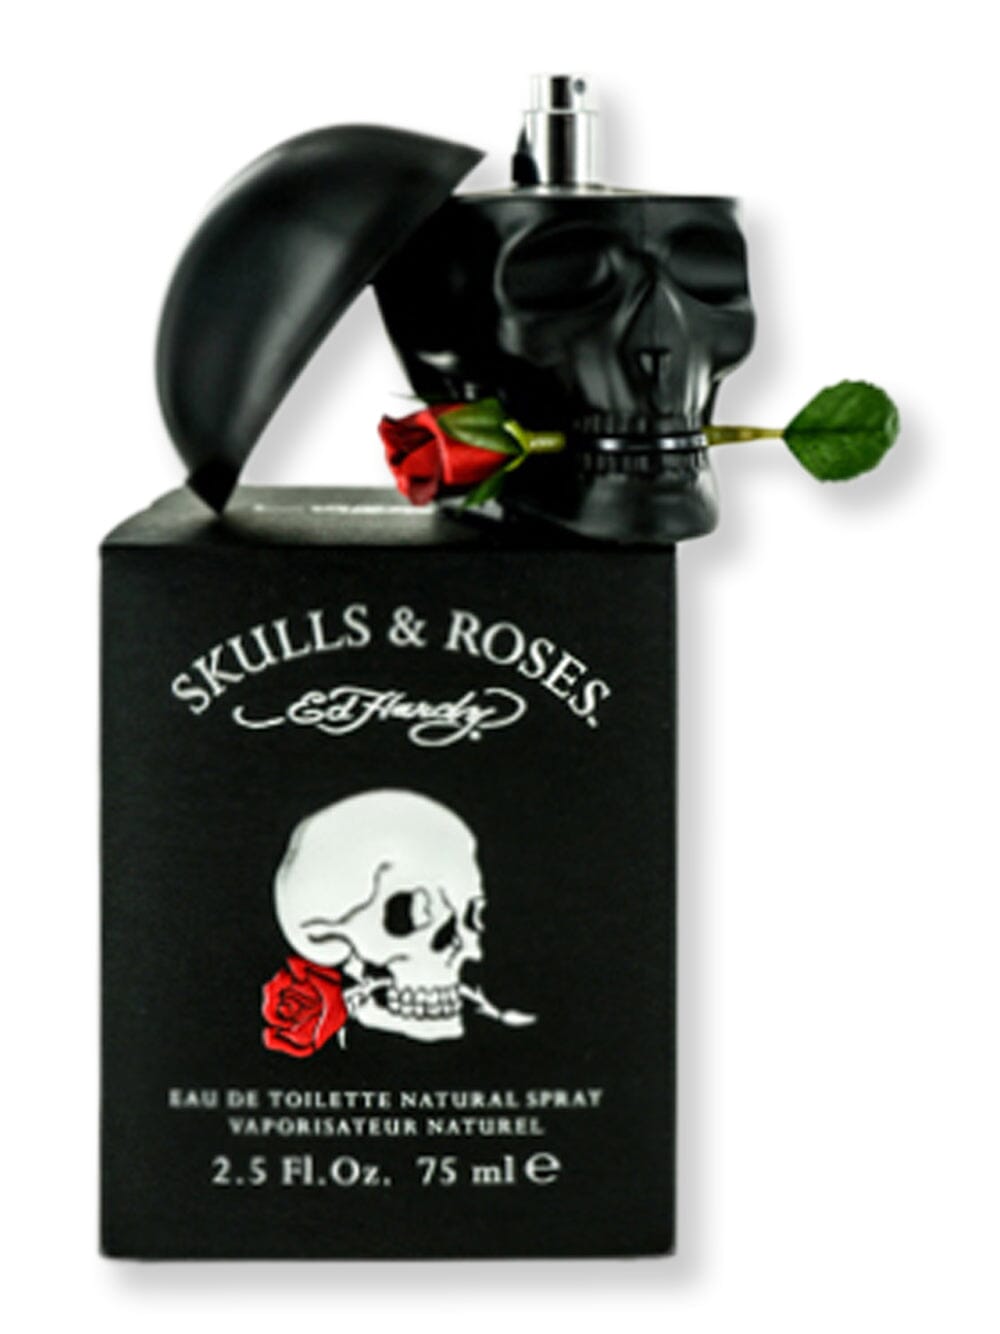 Christian Audigier Christian Audigier Skulls & Roses Men EDT Spray 2.5 oz75 ml Perfume 